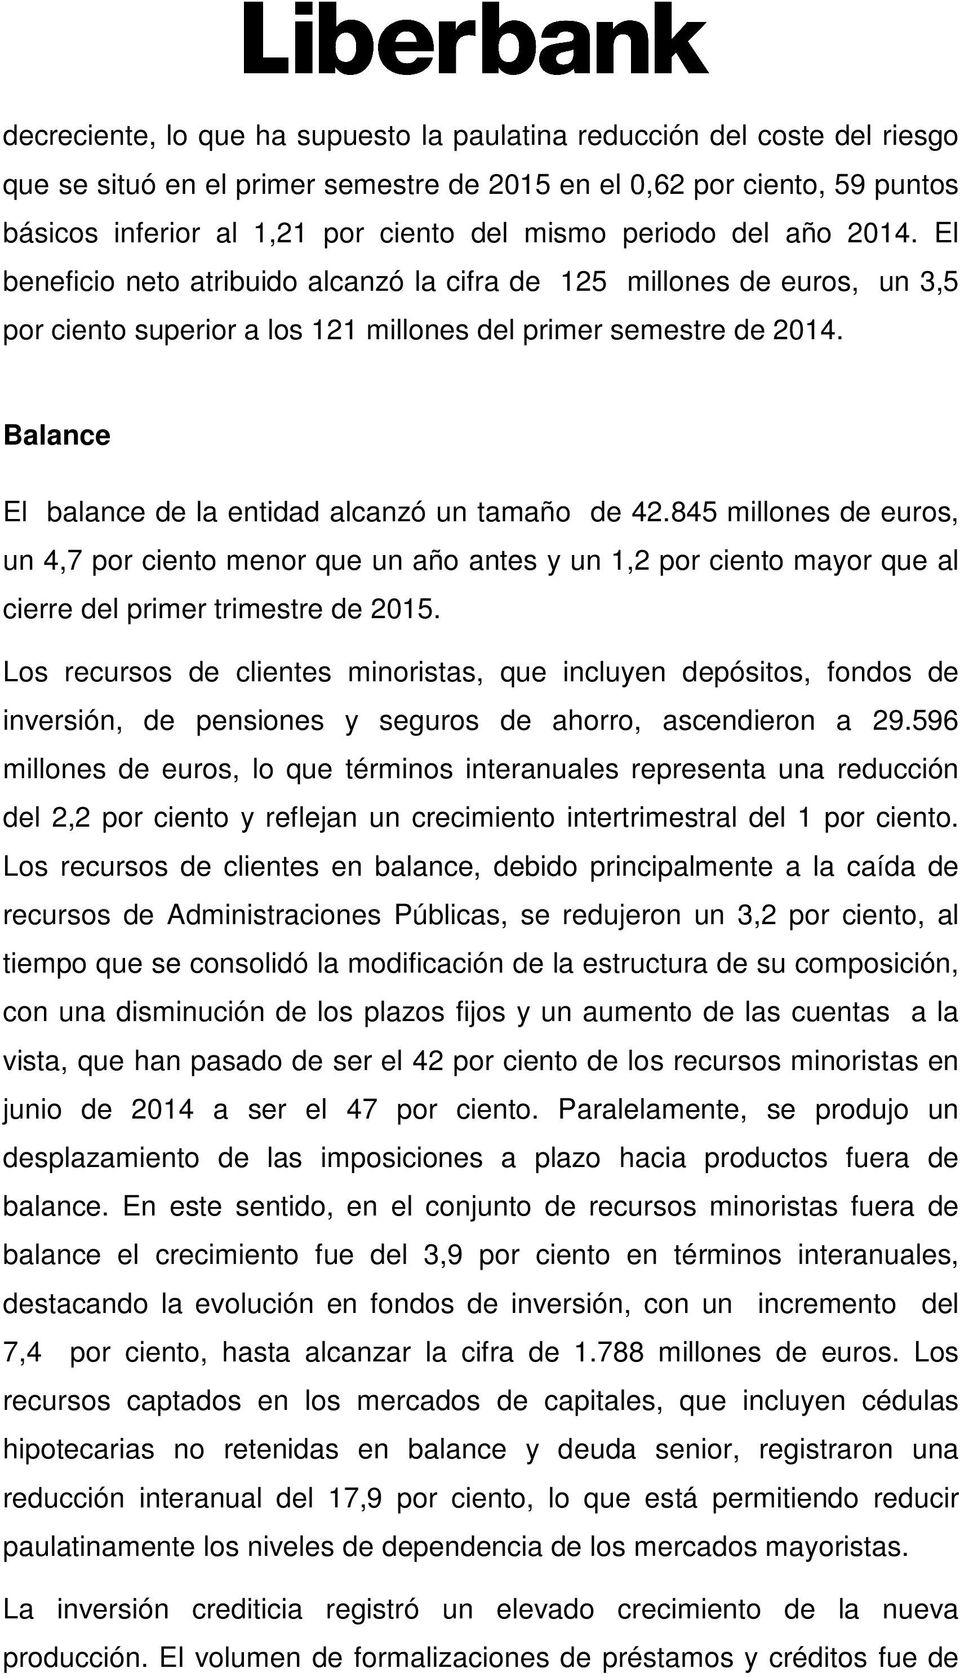 Balance El balance de la entidad alcanzó un tamaño de 42.845 millones de euros, un 4,7 por ciento menor que un año antes y un 1,2 por ciento mayor que al cierre del primer trimestre de 2015.